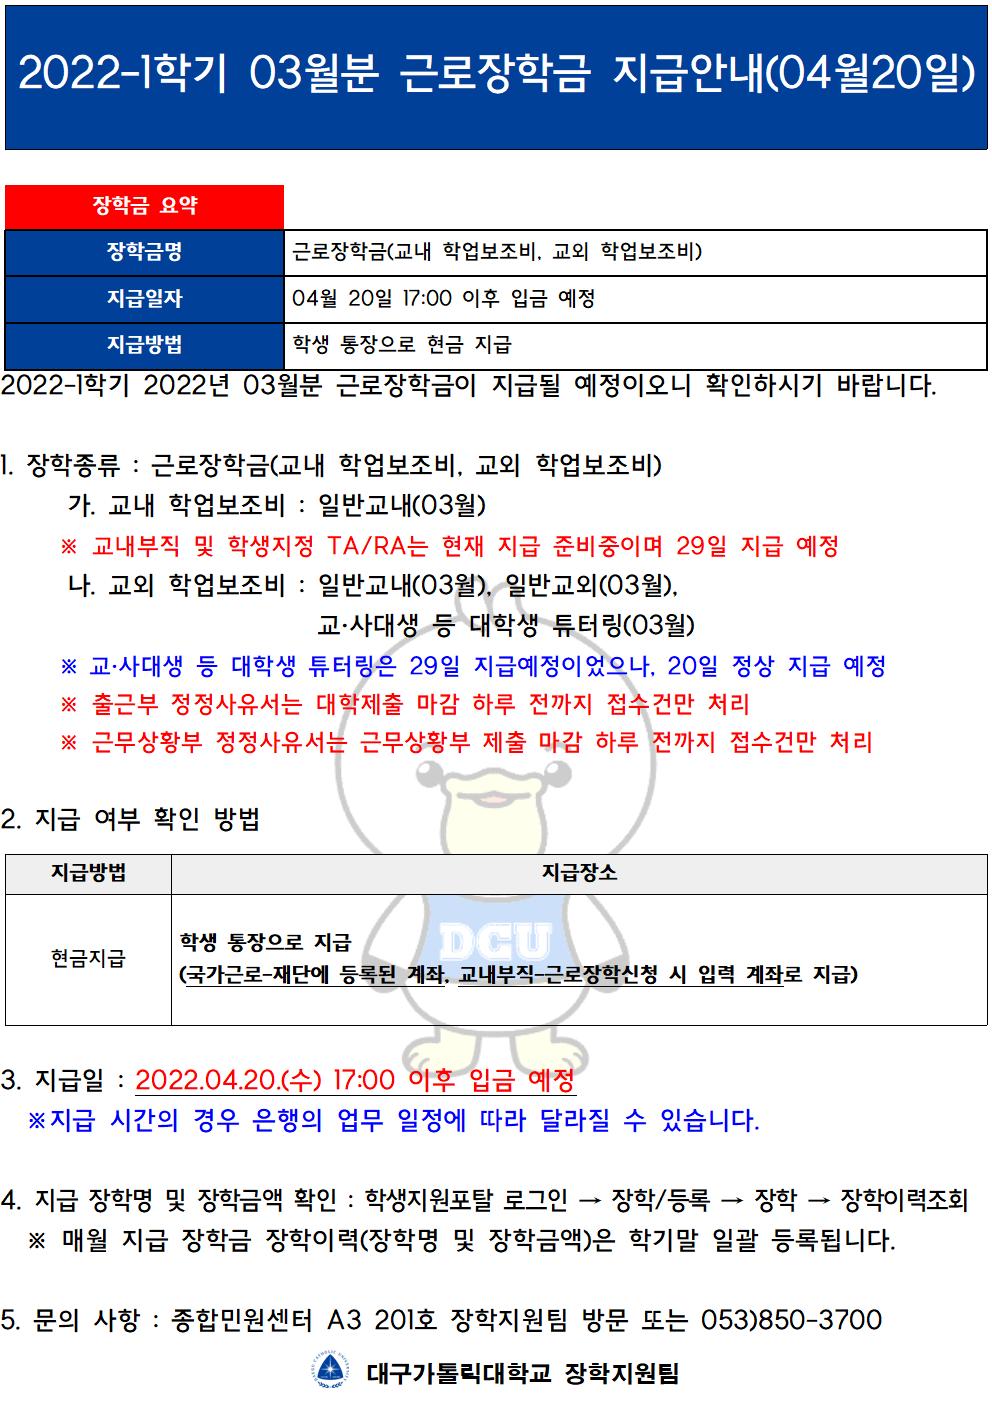 [근로] 2022-1학기 03월분 근로장학금 지급 안내(04월 20일)